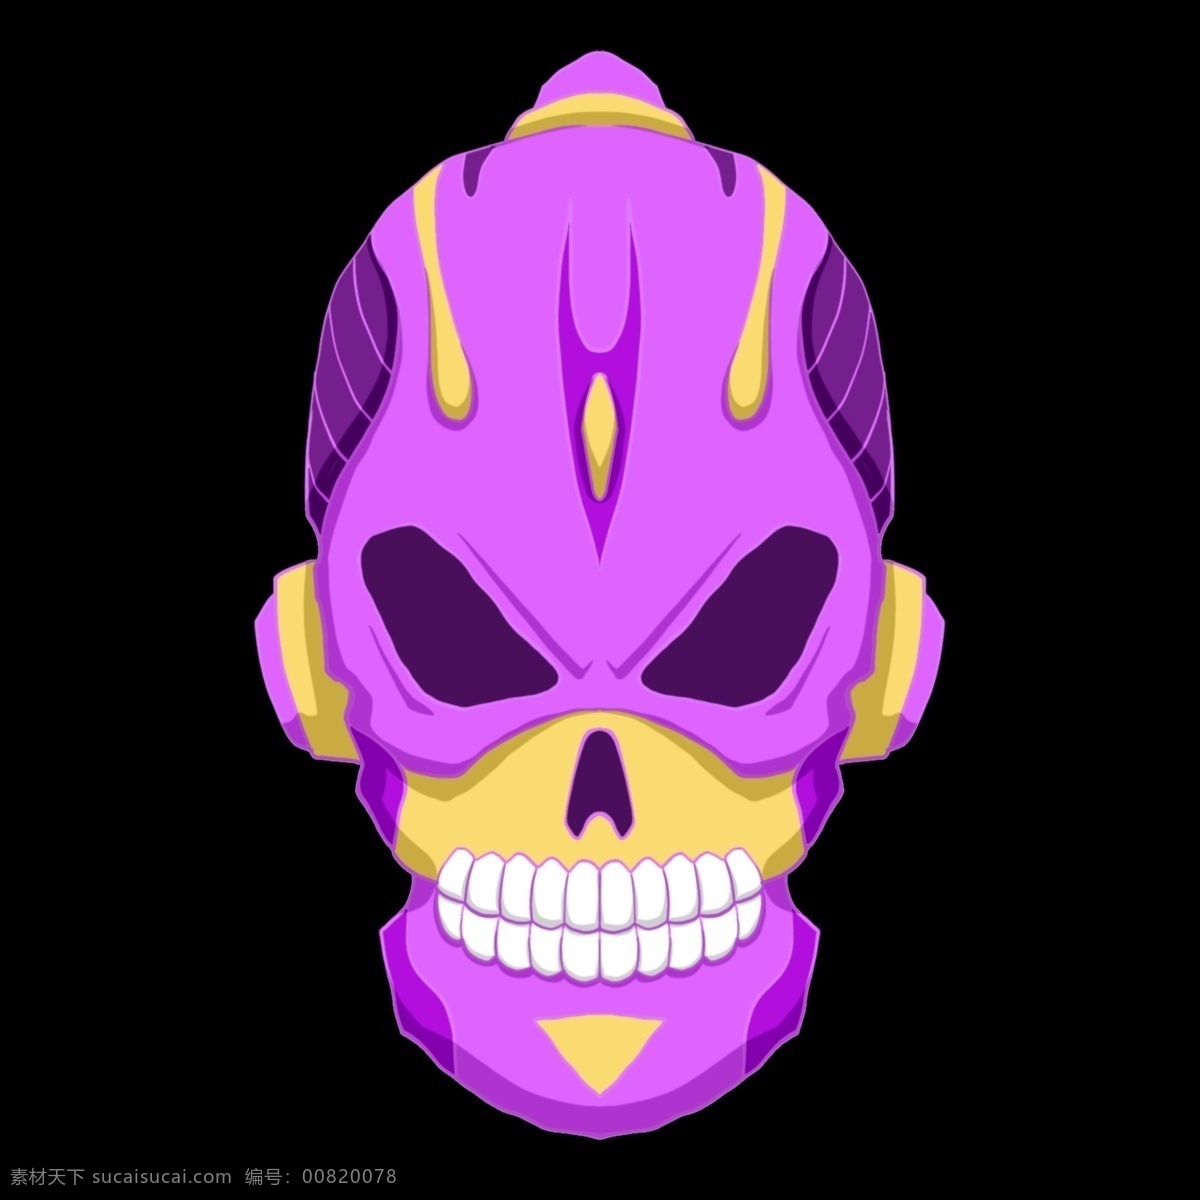 紫色 立体 骷髅 插图 黄色装饰 紫色骷髅 紫色透明图层 恐怖骷髅头 头颅 恐怖 透明 简约的骷髅头 骷髅头插图